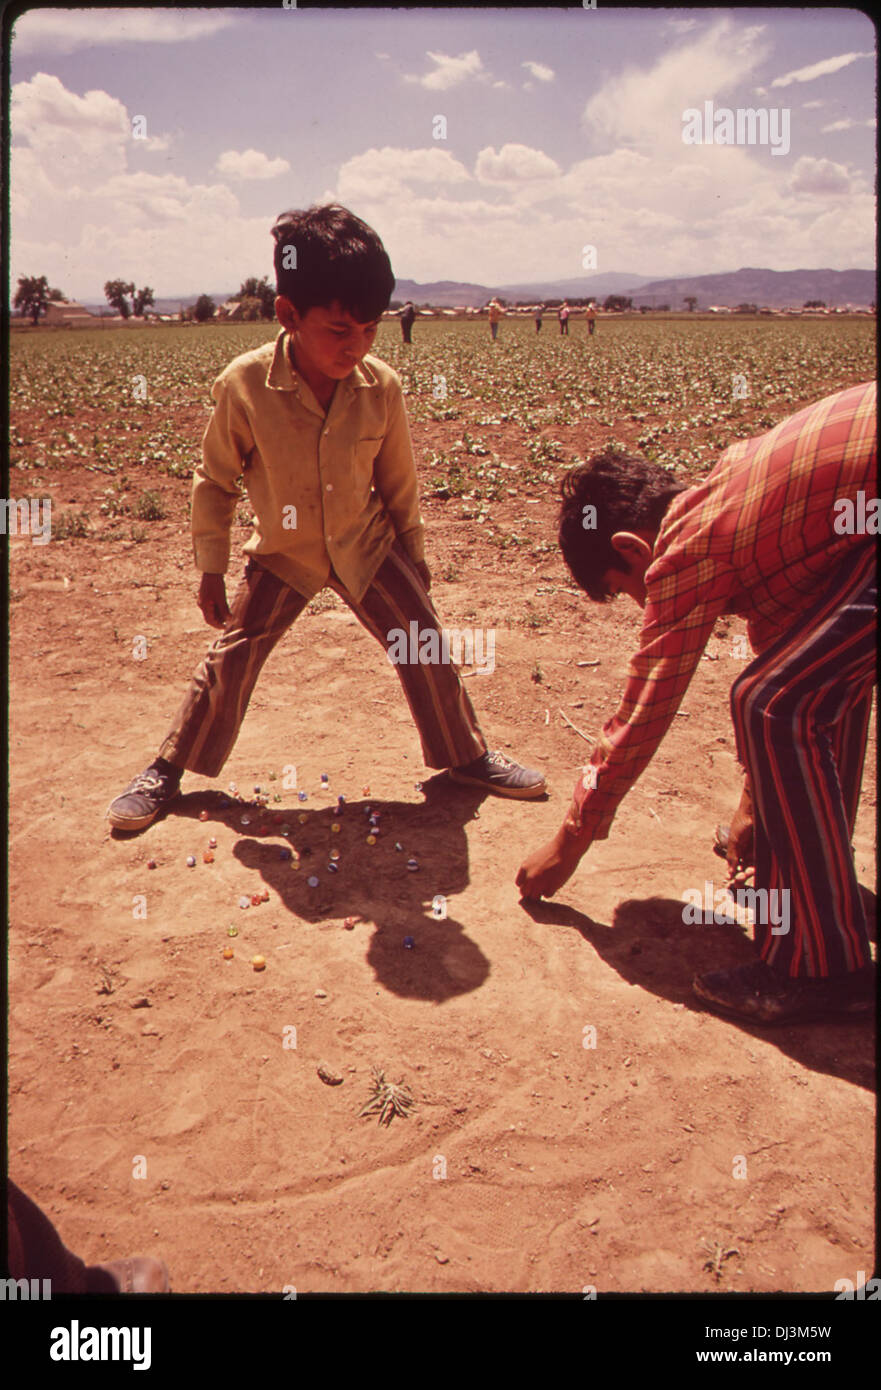 Los hijos de los trabajadores migrantes juegan canicas mientras sus padres trabajan en campos 855 Foto de stock